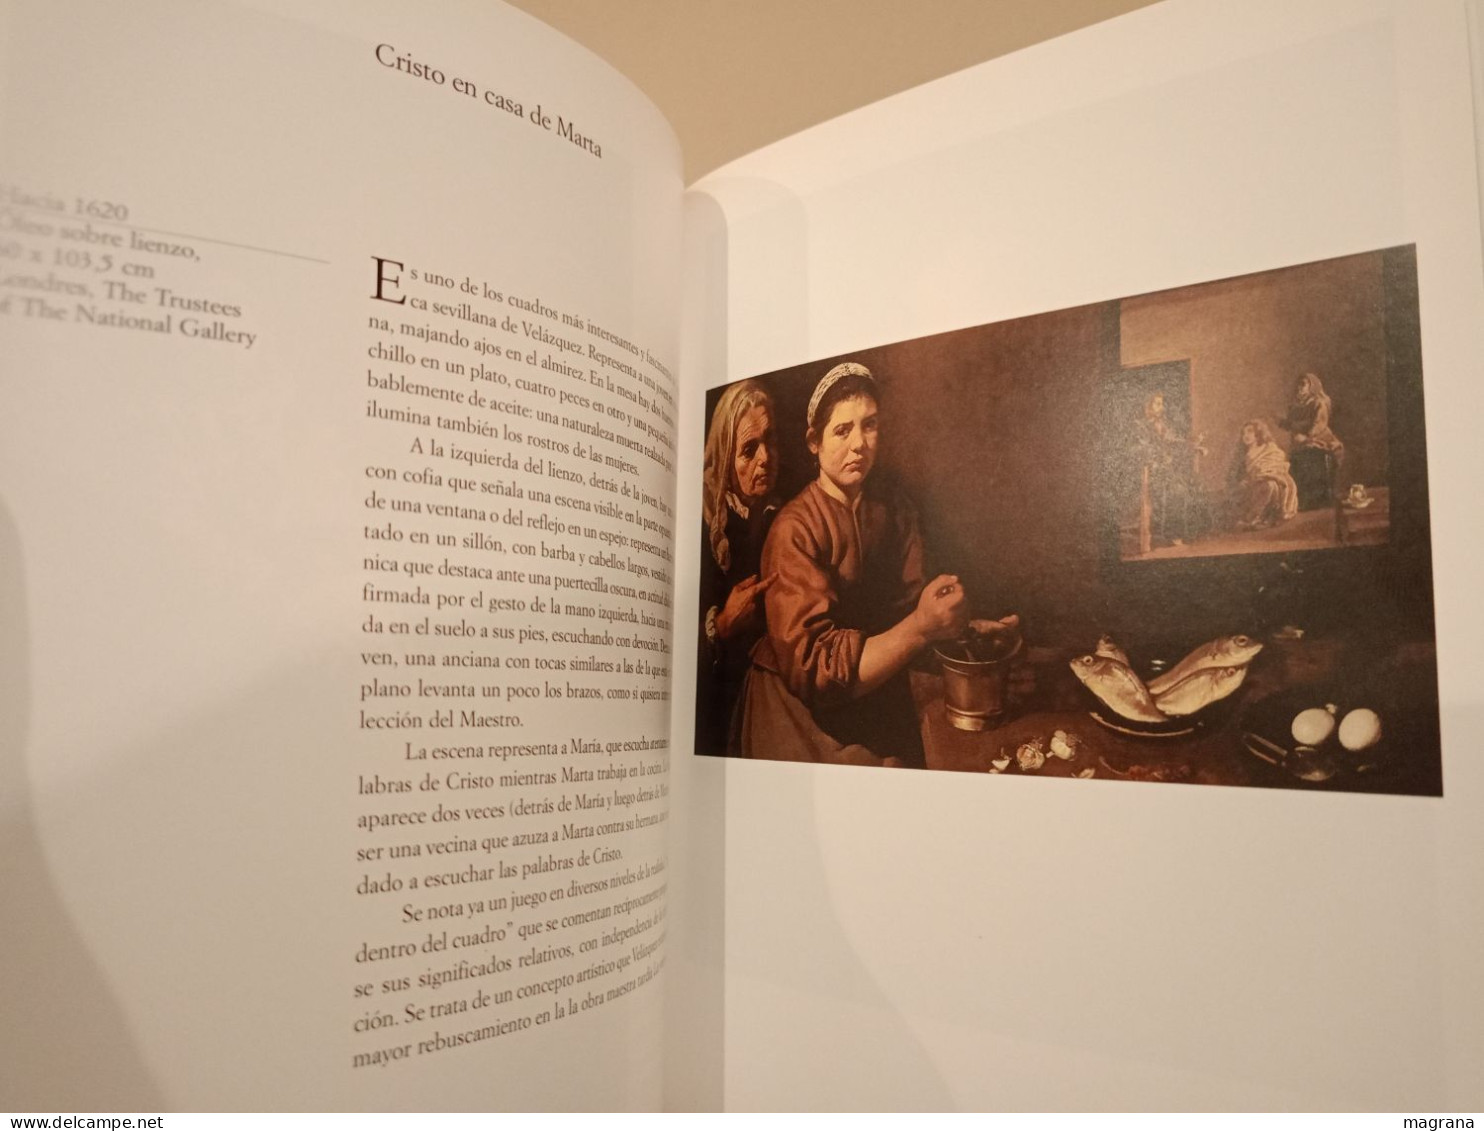 Velázquez. Los Grandes Genios del Arte. (1) Biblioteca el Mundo. Presentación de Javier Portús. 2004. 191 pp.